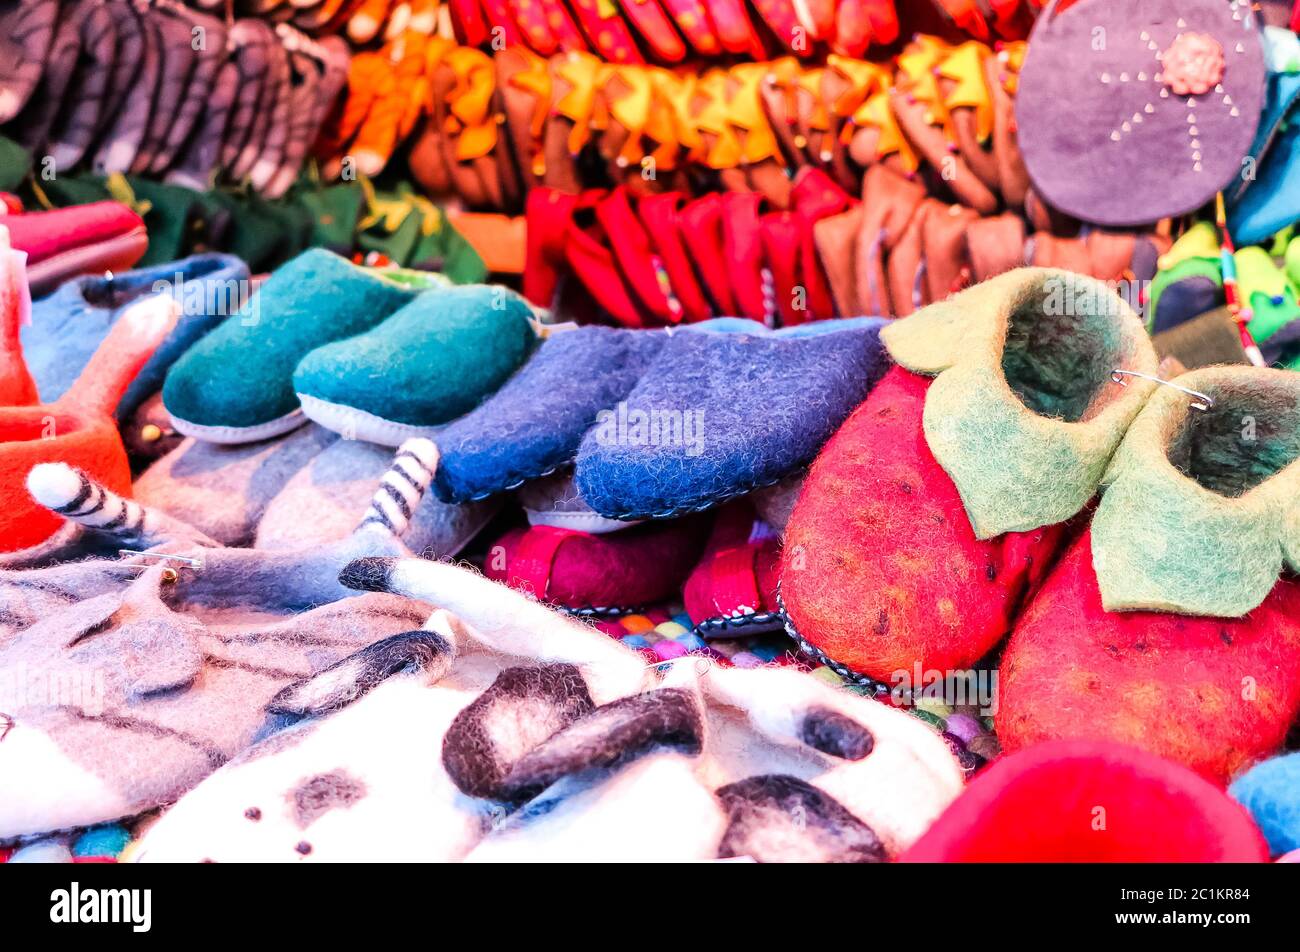 L'impression colorée chaussons à un marché de Noël allemand Banque D'Images